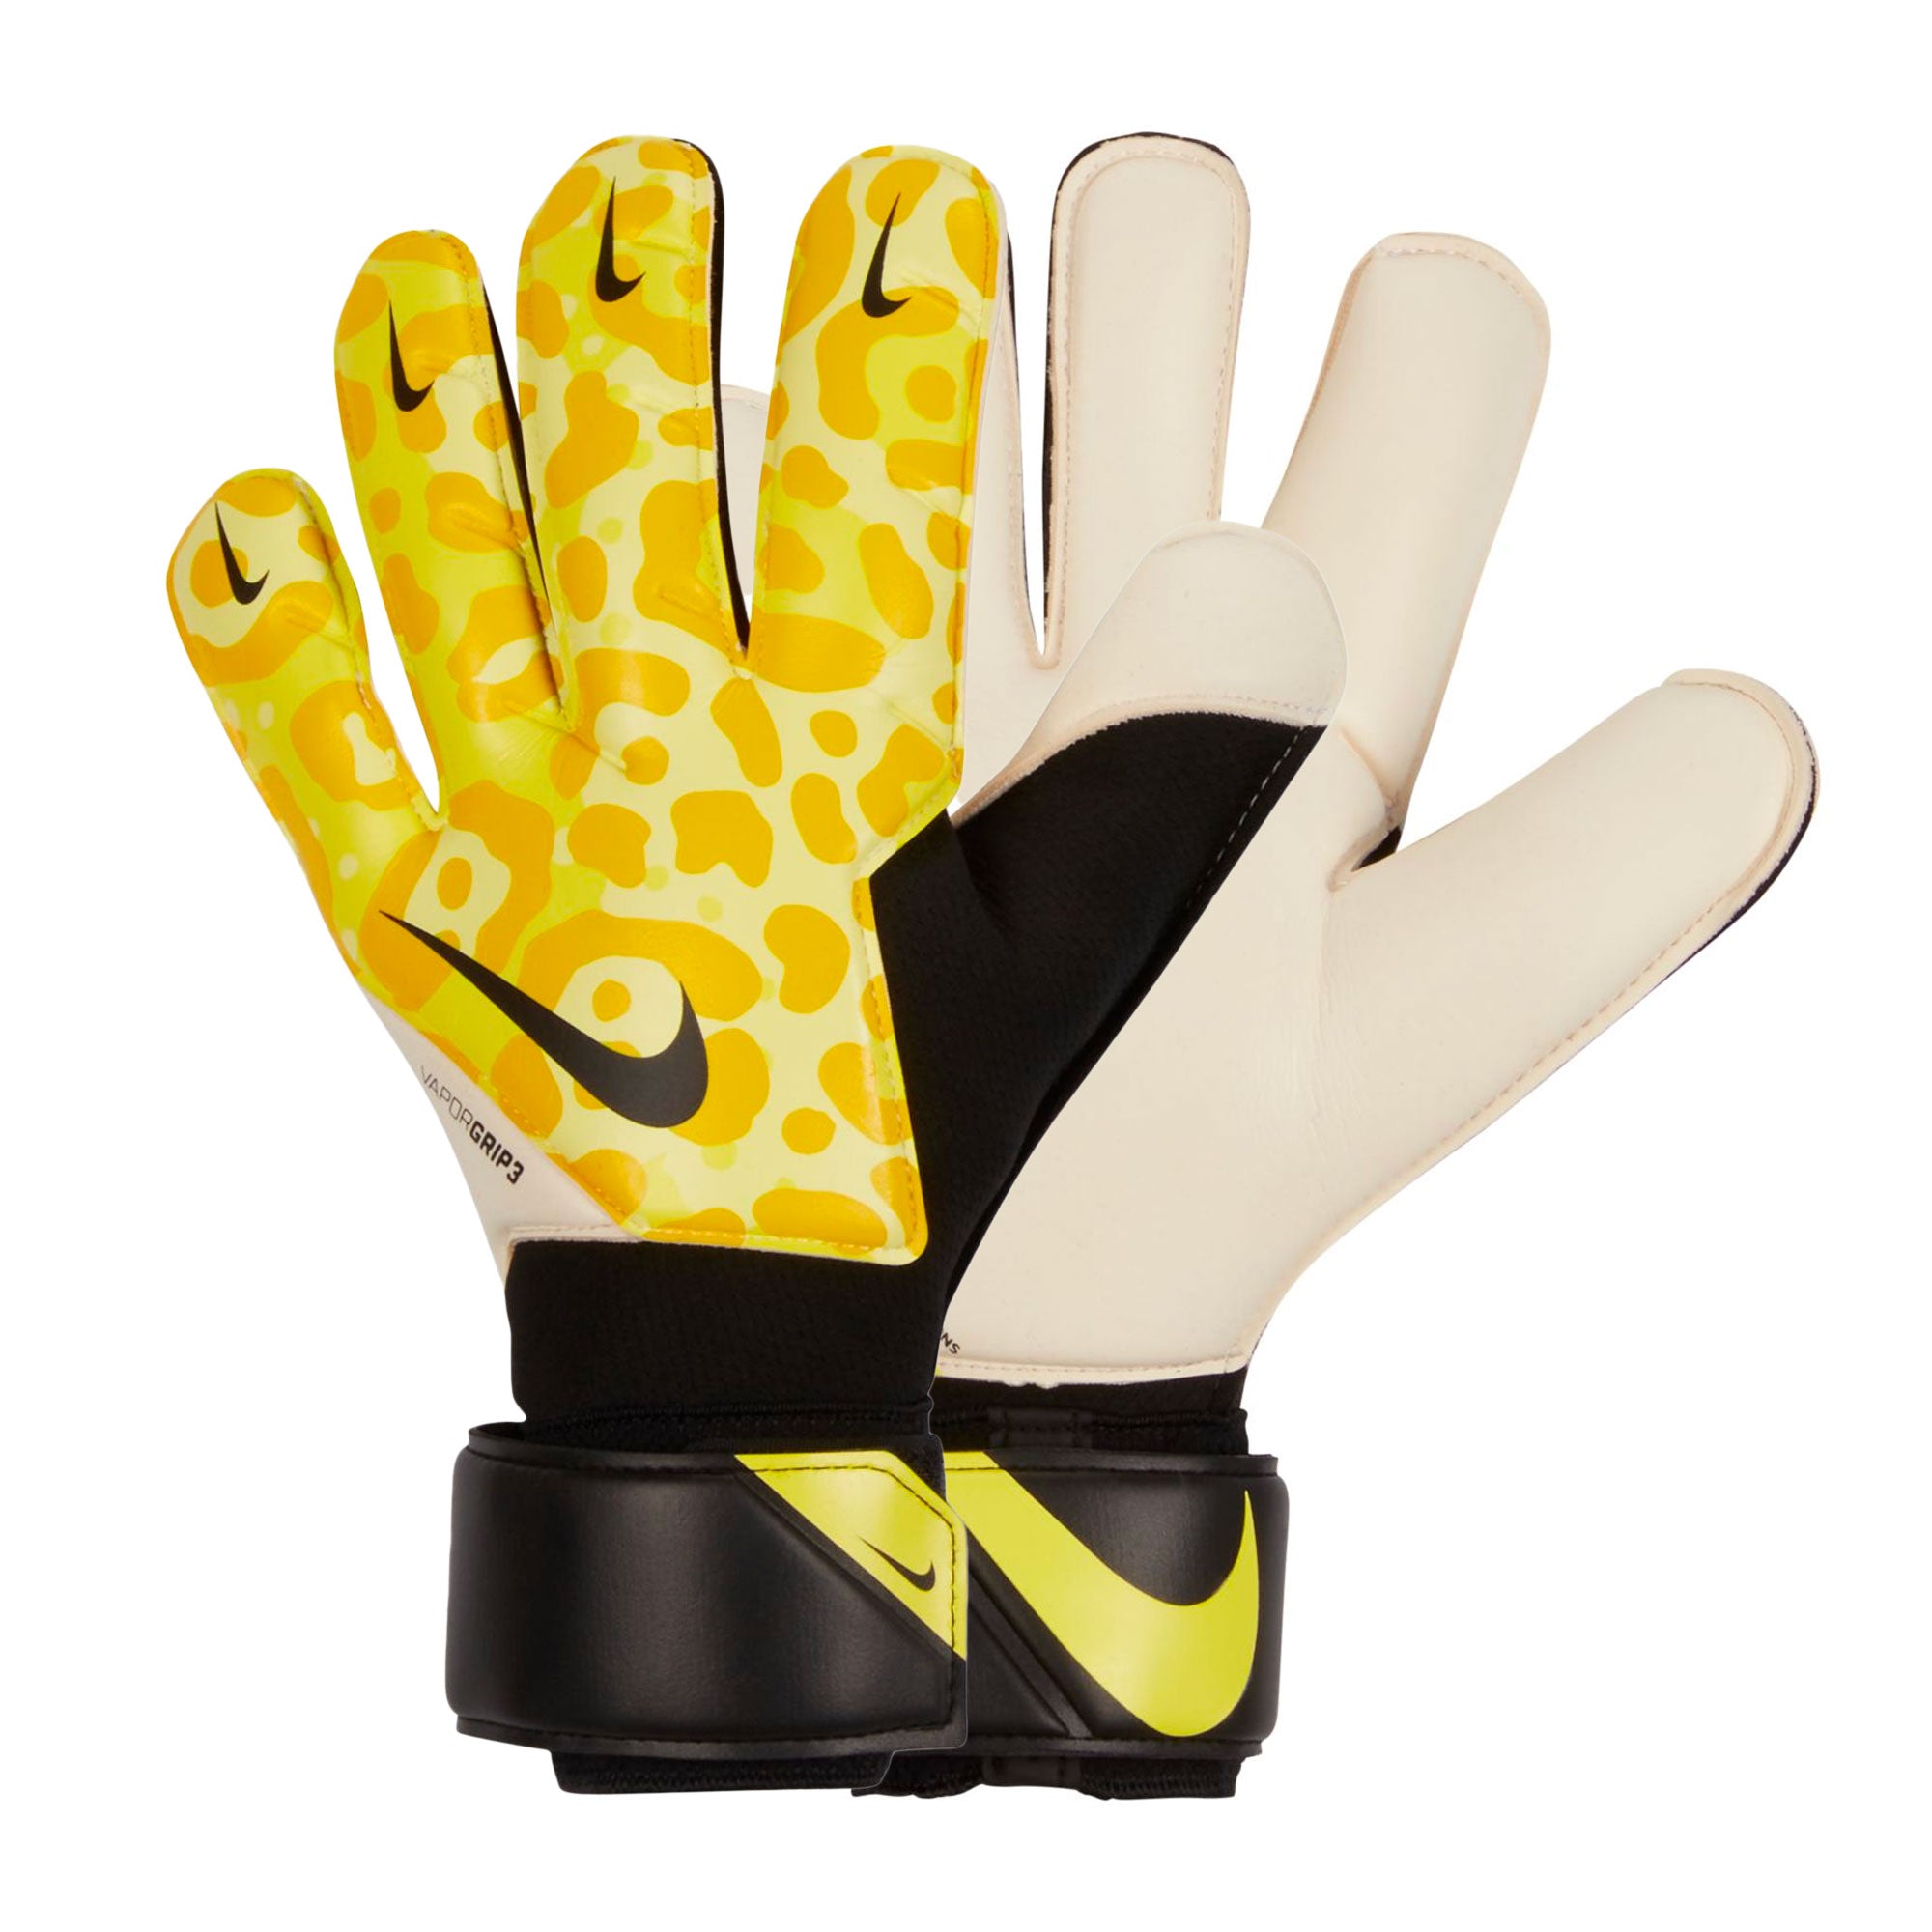 The BEST Nike GK Glove ever! The Vapor Grip 3 Goalkeeper Gloves 